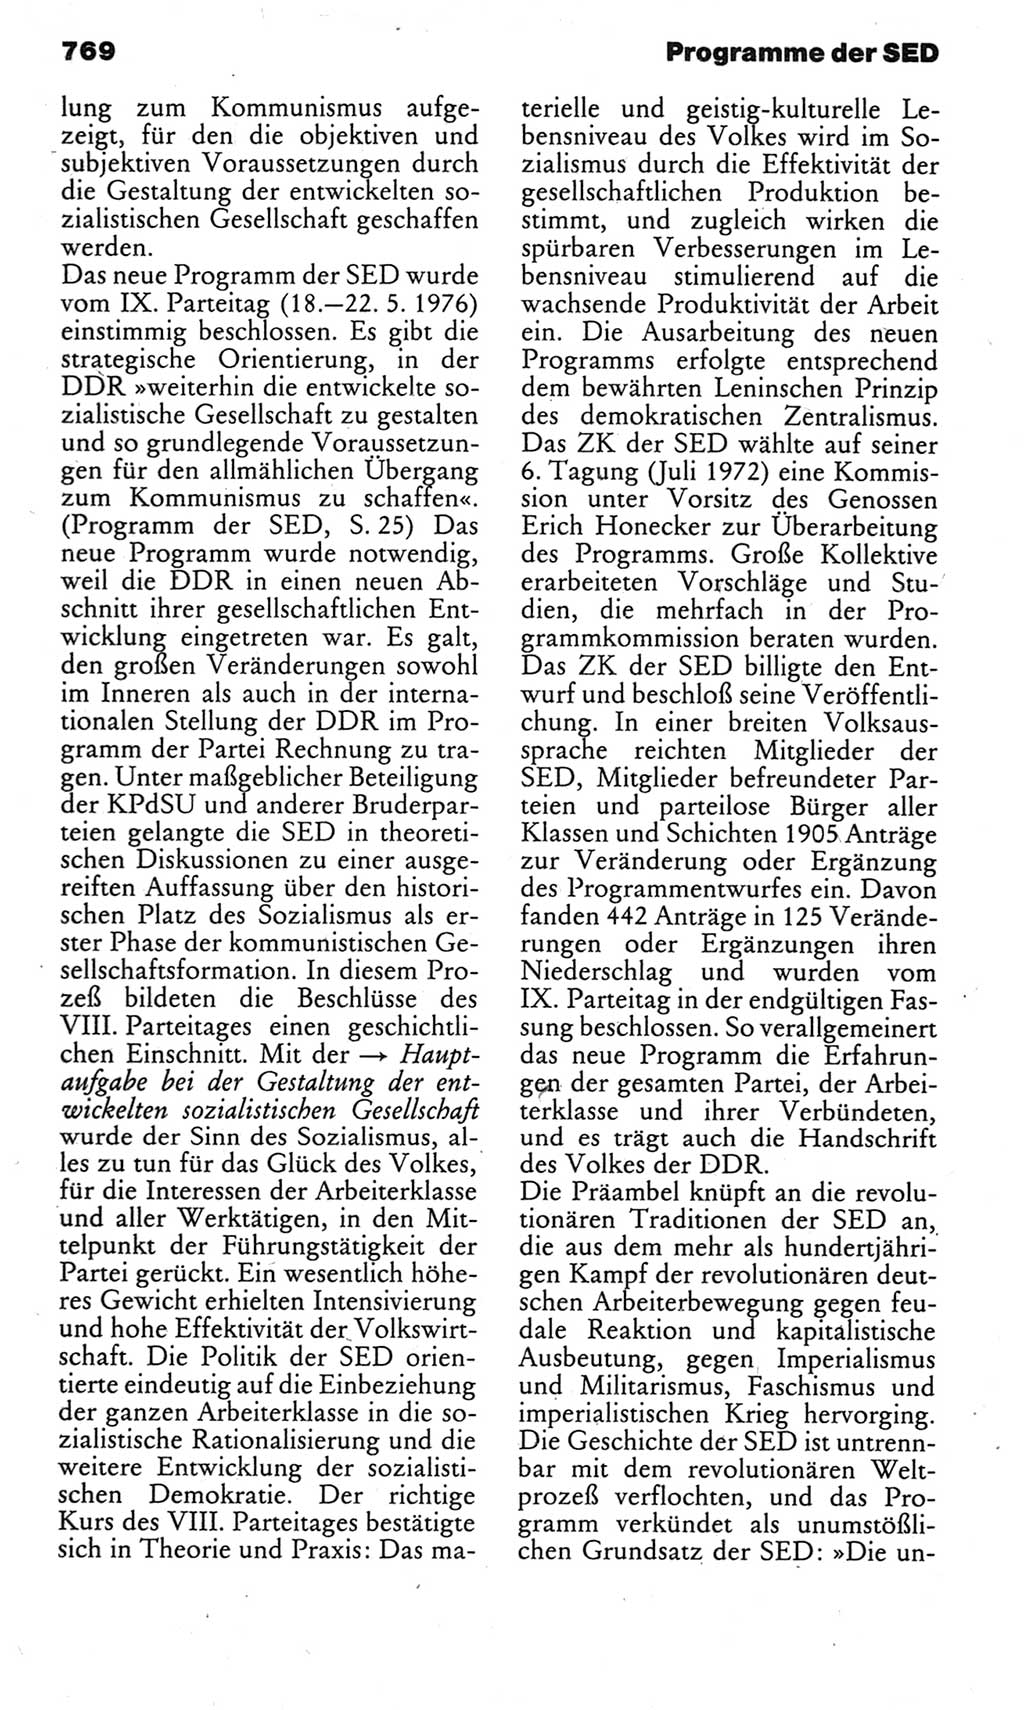 Kleines politisches Wörterbuch [Deutsche Demokratische Republik (DDR)] 1983, Seite 769 (Kl. pol. Wb. DDR 1983, S. 769)